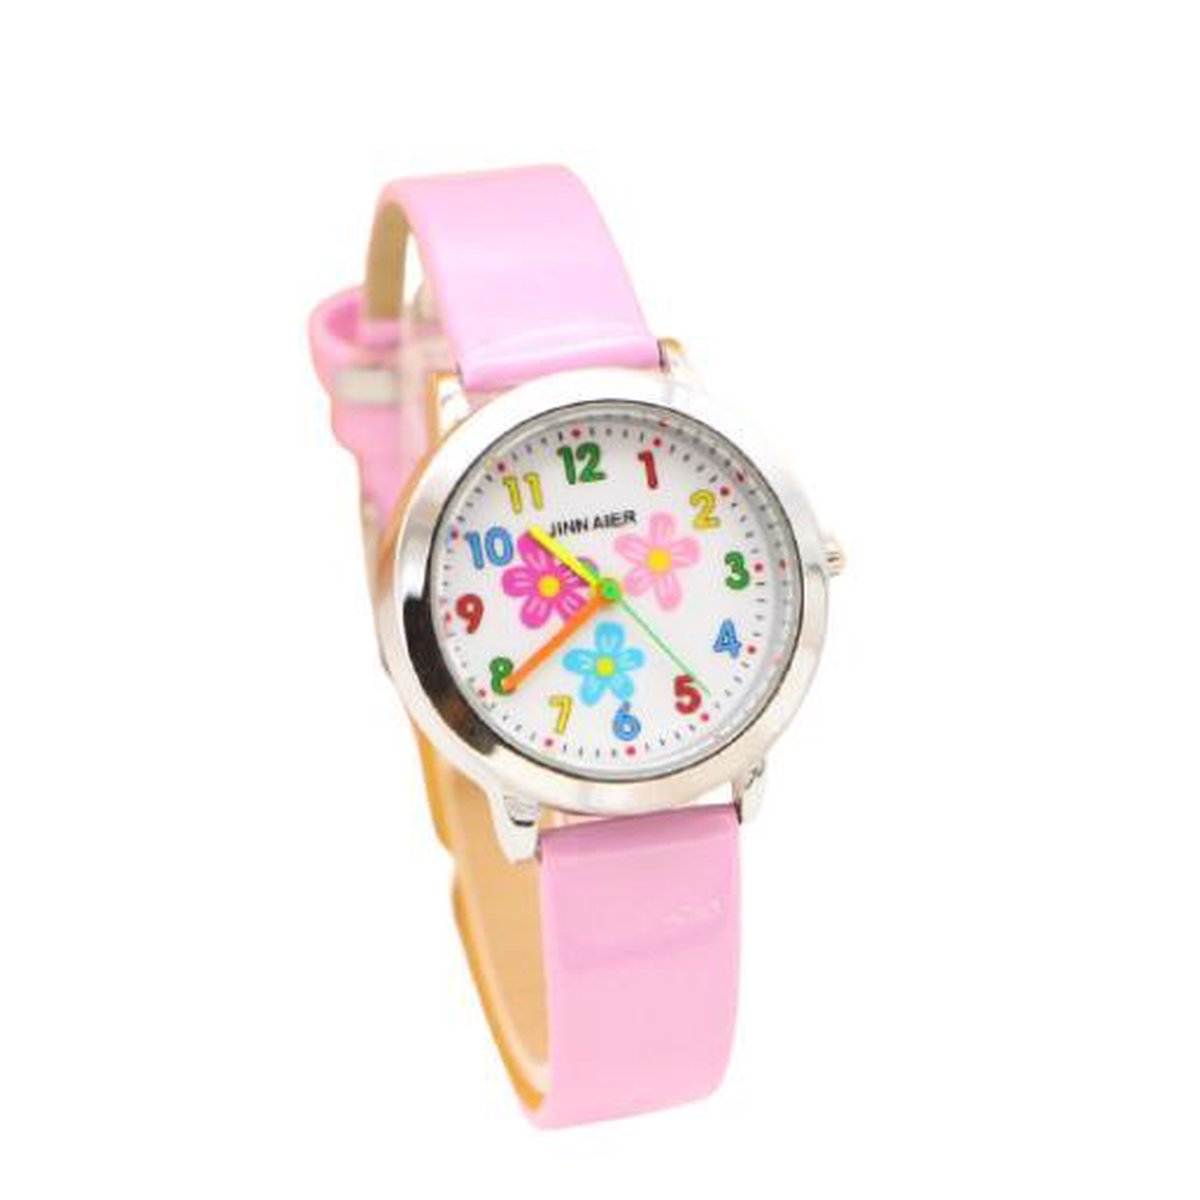 Meisjes horloge roze met bloem afbeelding en leer bandje.